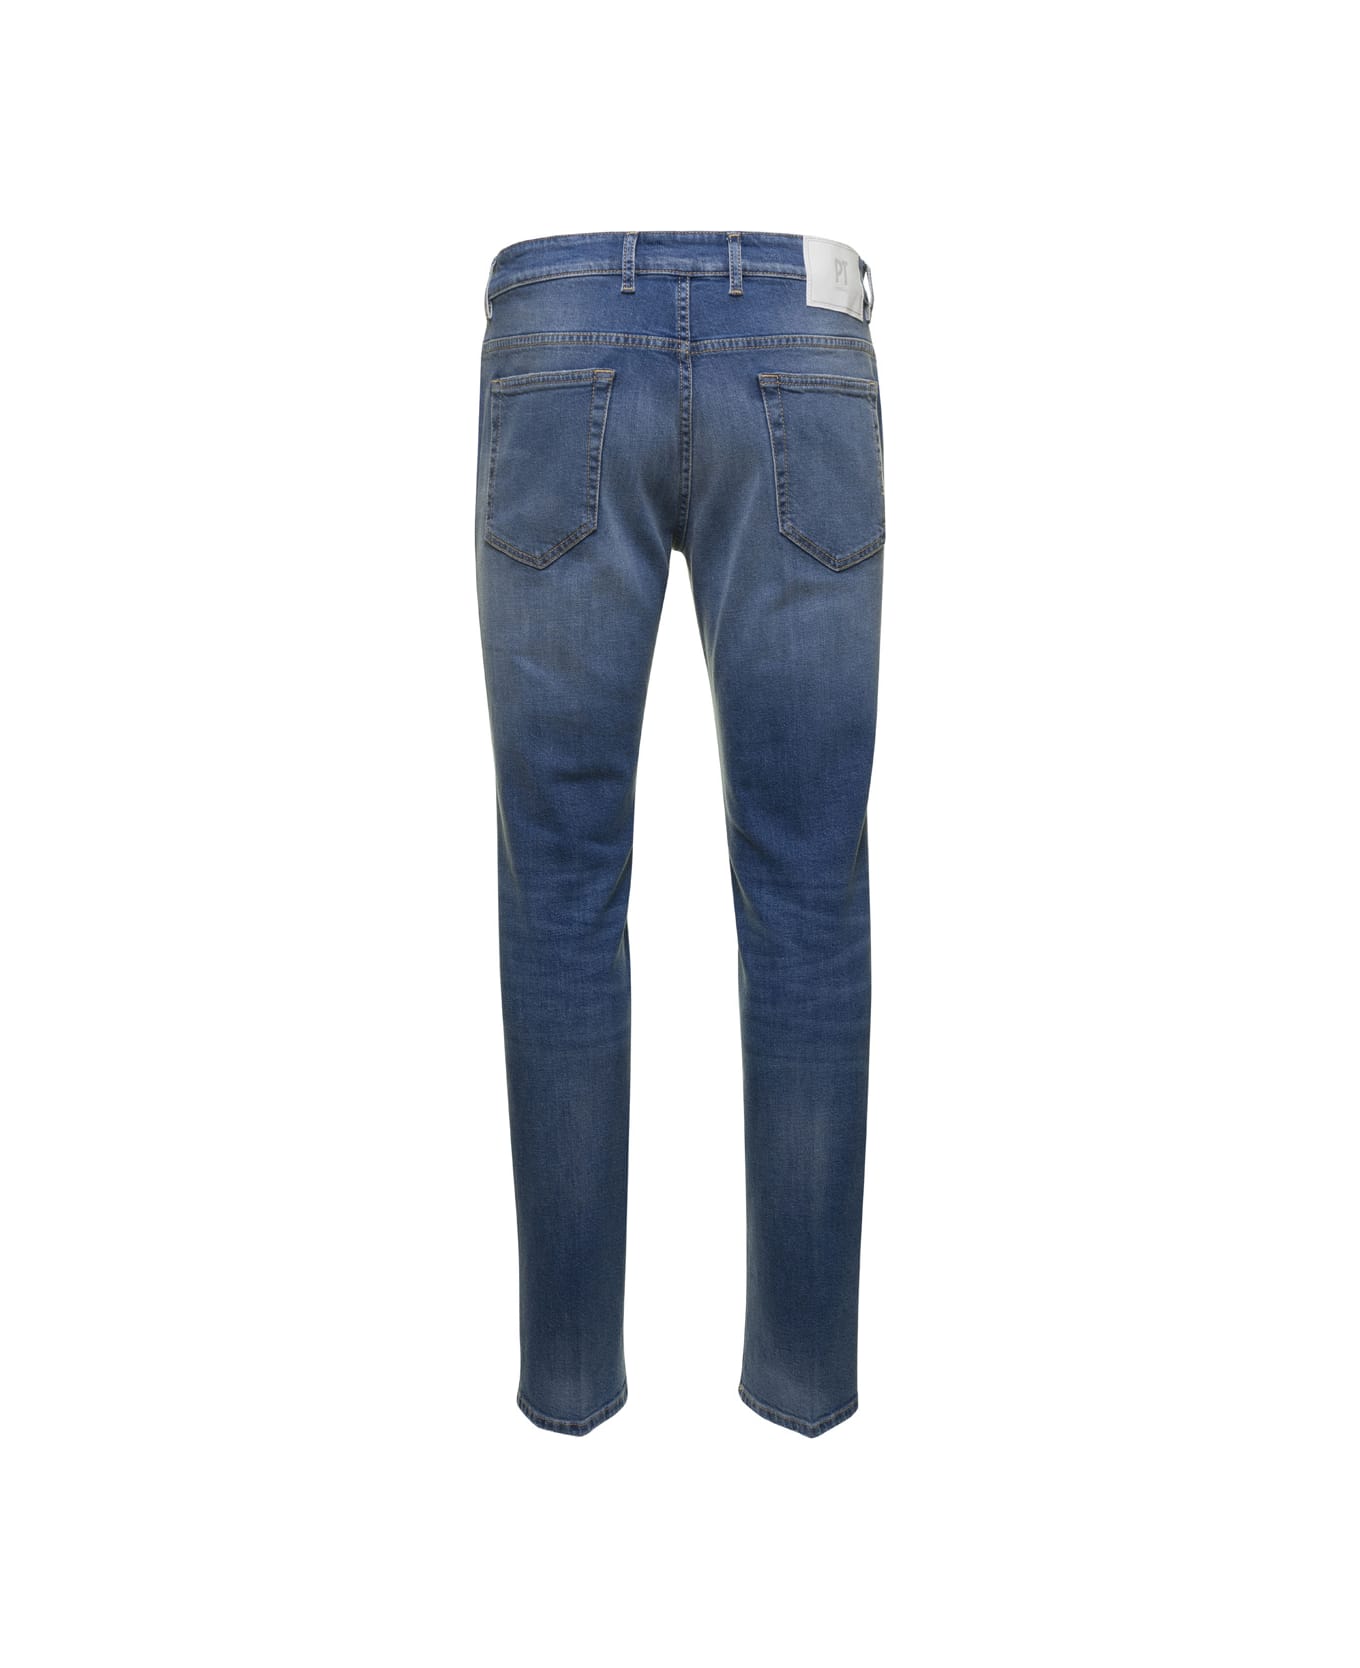 PT Torino Blue Medium Waist Slim Jeans In Cotton Blend Man - Blu デニム